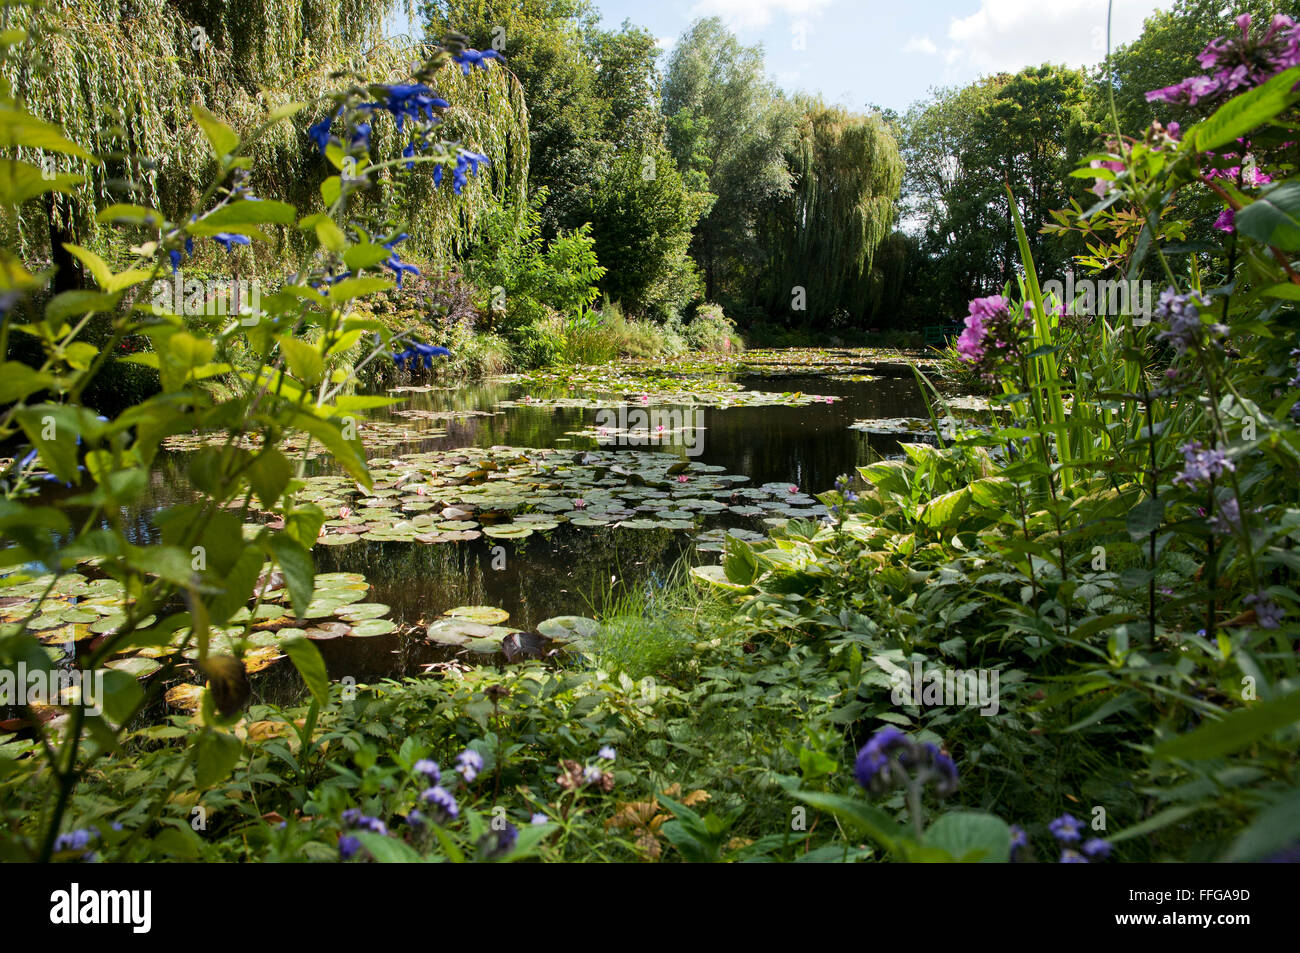 Jardin de Claude Monet giverny departement eure france europe Banque D'Images